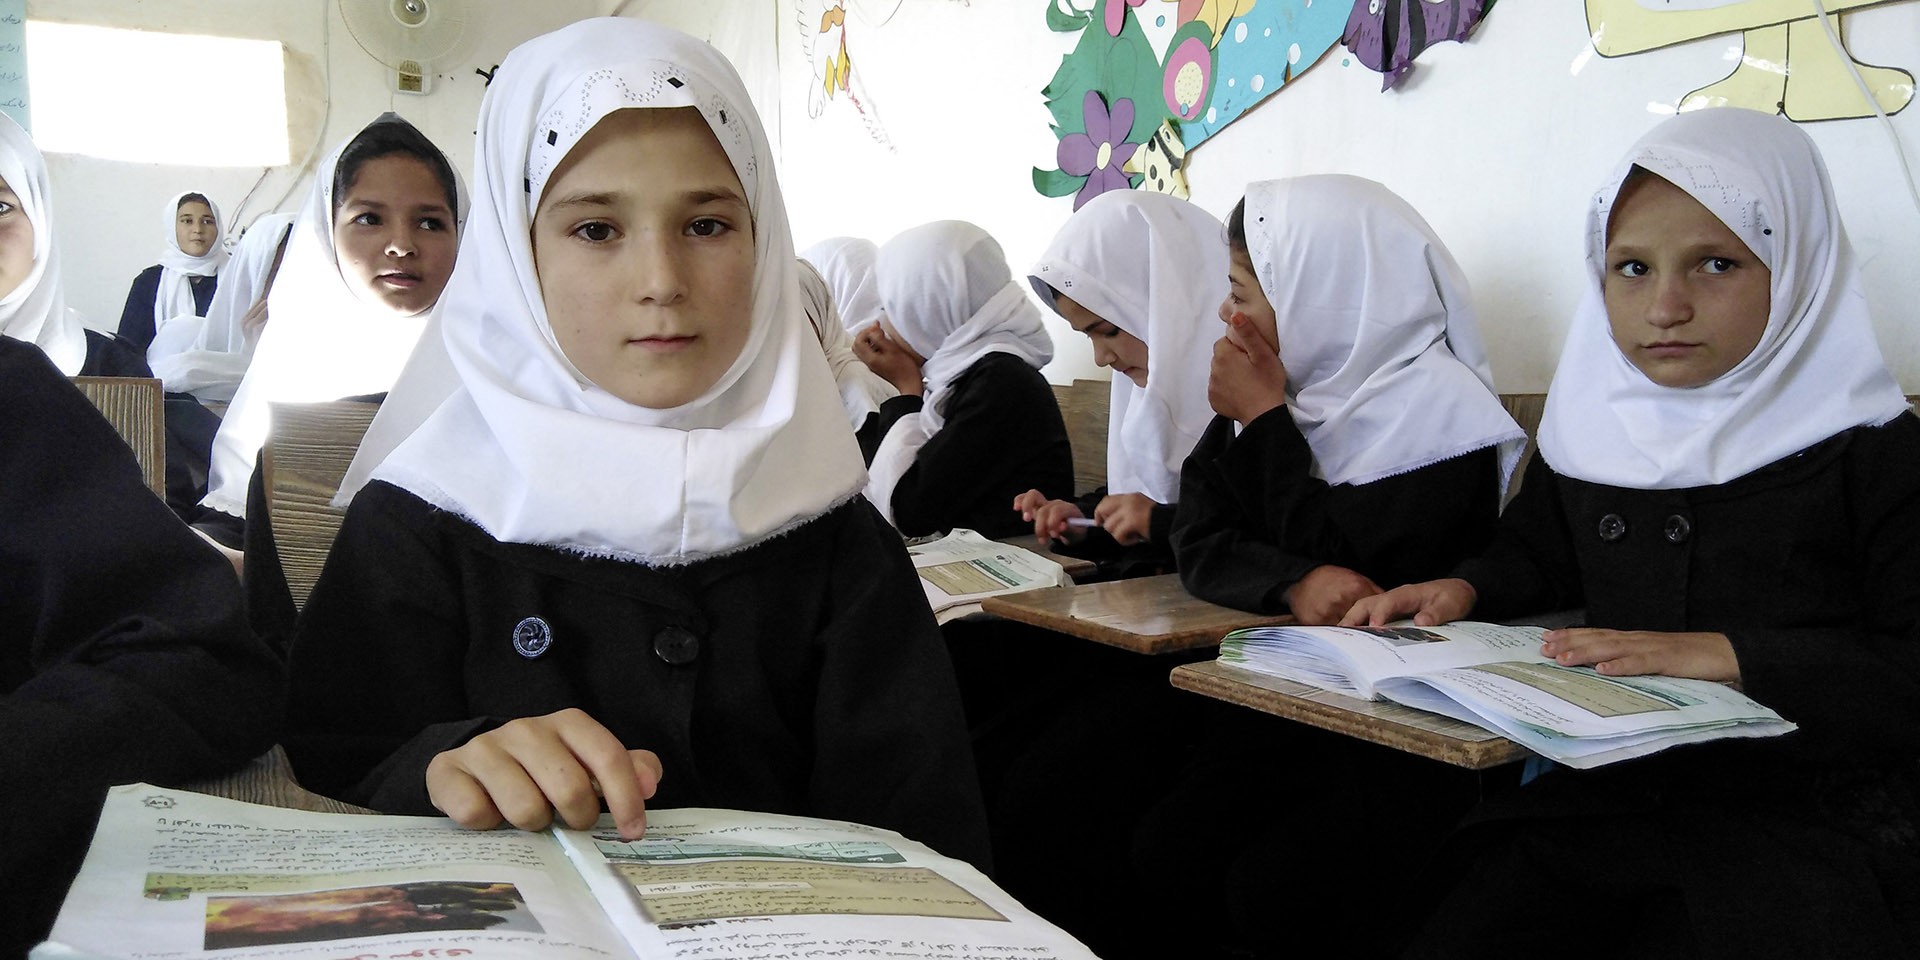 Einige Mädchen mit Kopftüchern im Vordergrund. Sie befinden sich in einem Klassenzimmer und lesen Schulbücher. 